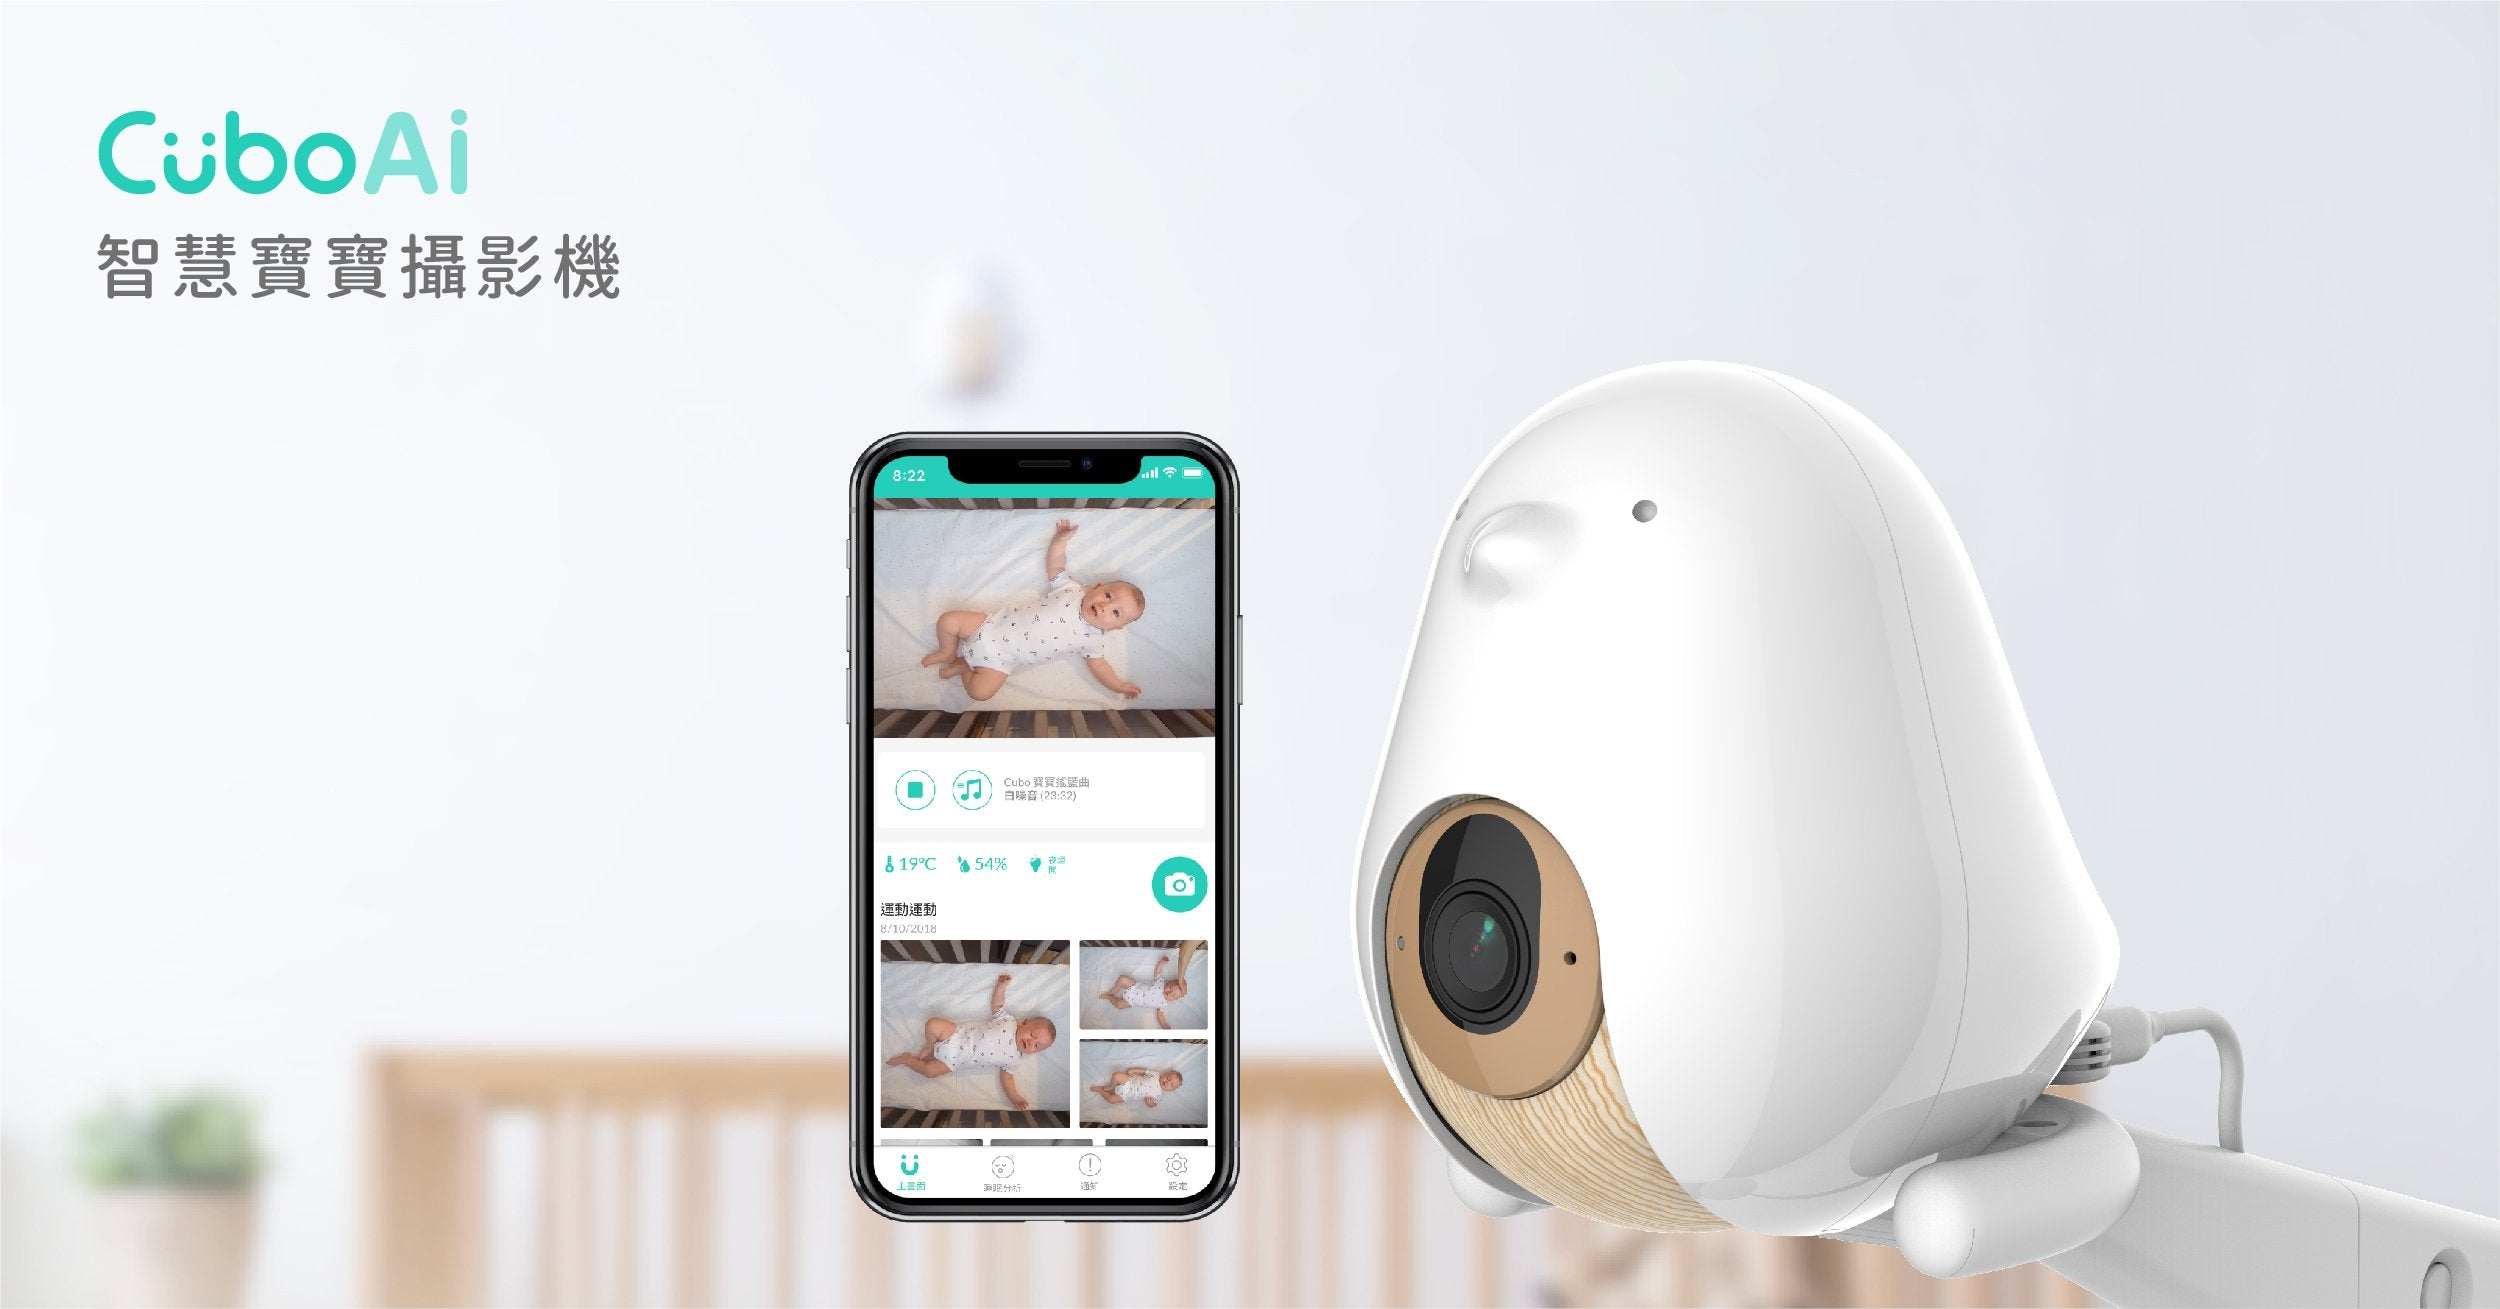 CuboAi 智慧寶寶攝影機- 第一台守護寶寶睡眠、安全、回憶的寶寶攝影機 